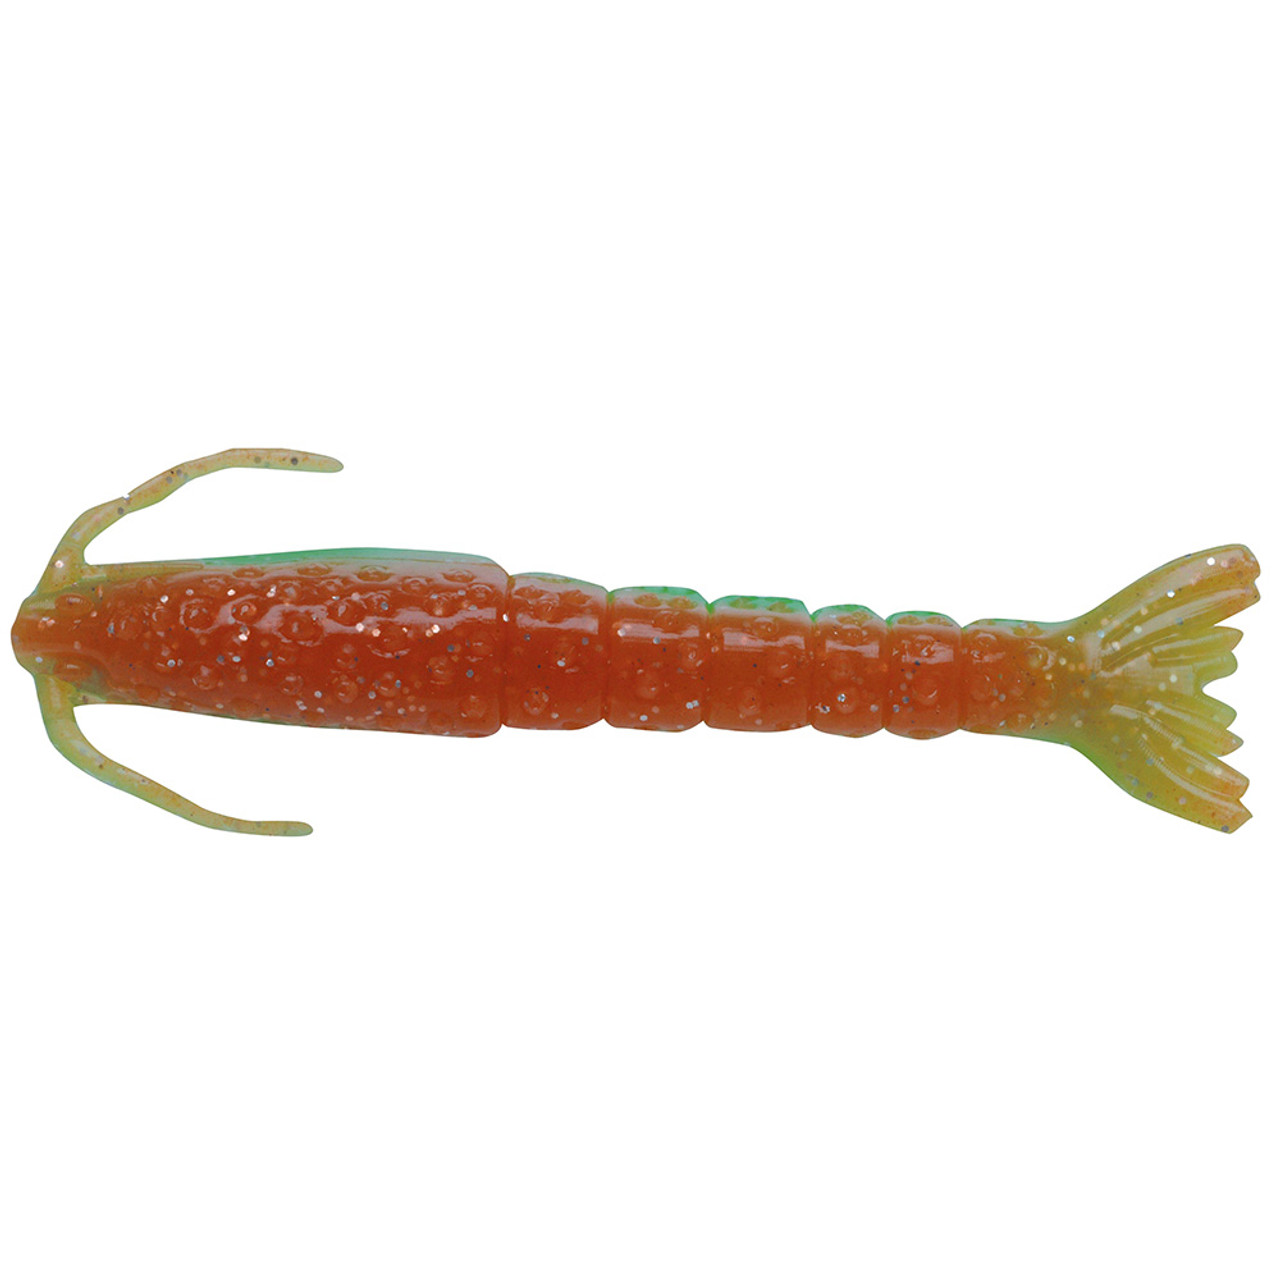 Berkley Gulp! Saltwater Shrimp - 3 - Nuclear Chicken